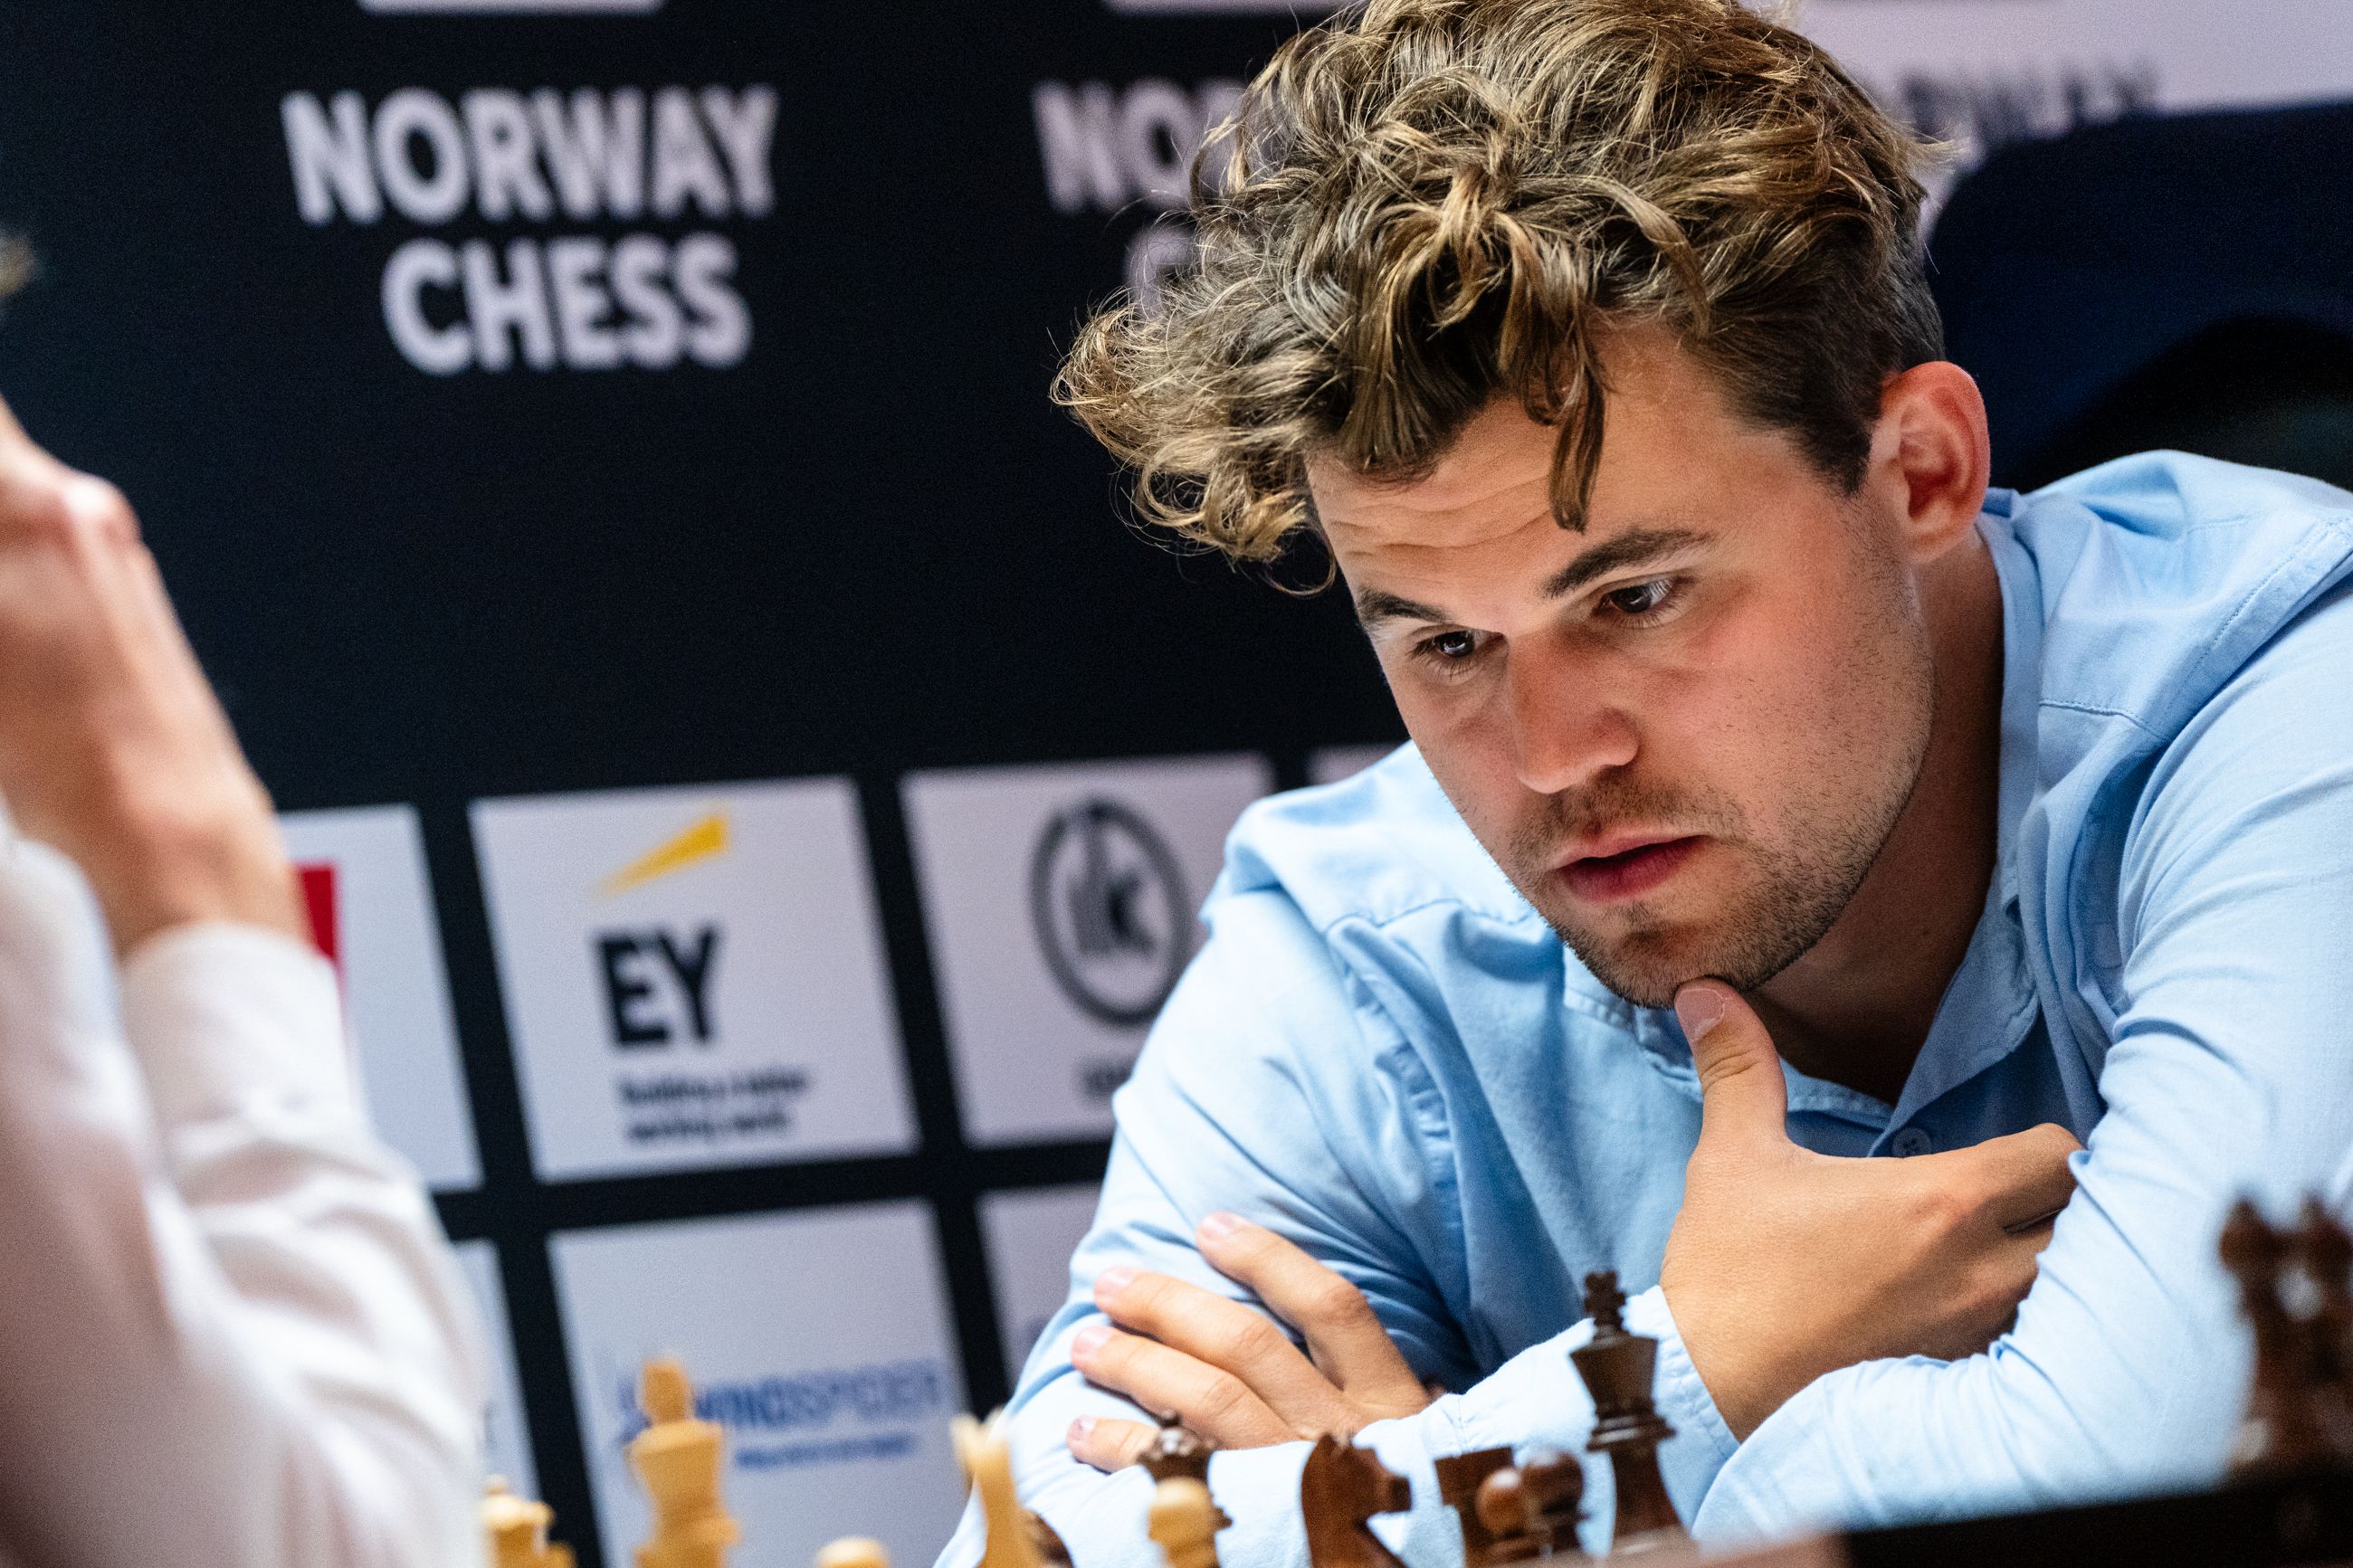 卡鲁阿纳-卡尔森 挪威 国际象棋 2024